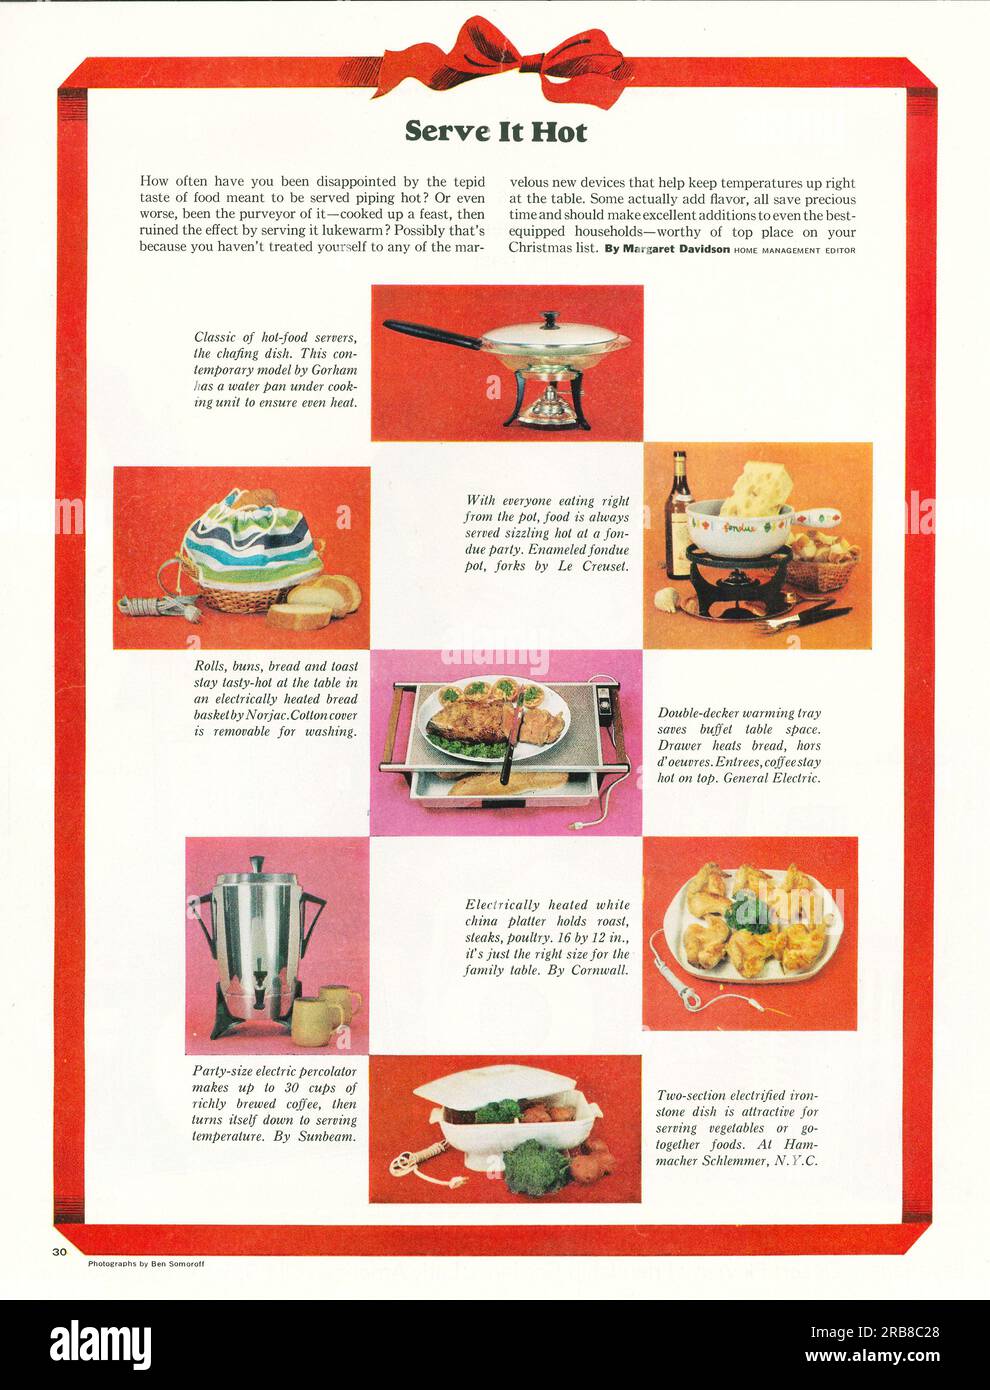 Servire caldo - dispositivi di mantenimento della temperatura, utensili da cucina, articolo pubblicitario su una rivista Journal 1965 Foto Stock